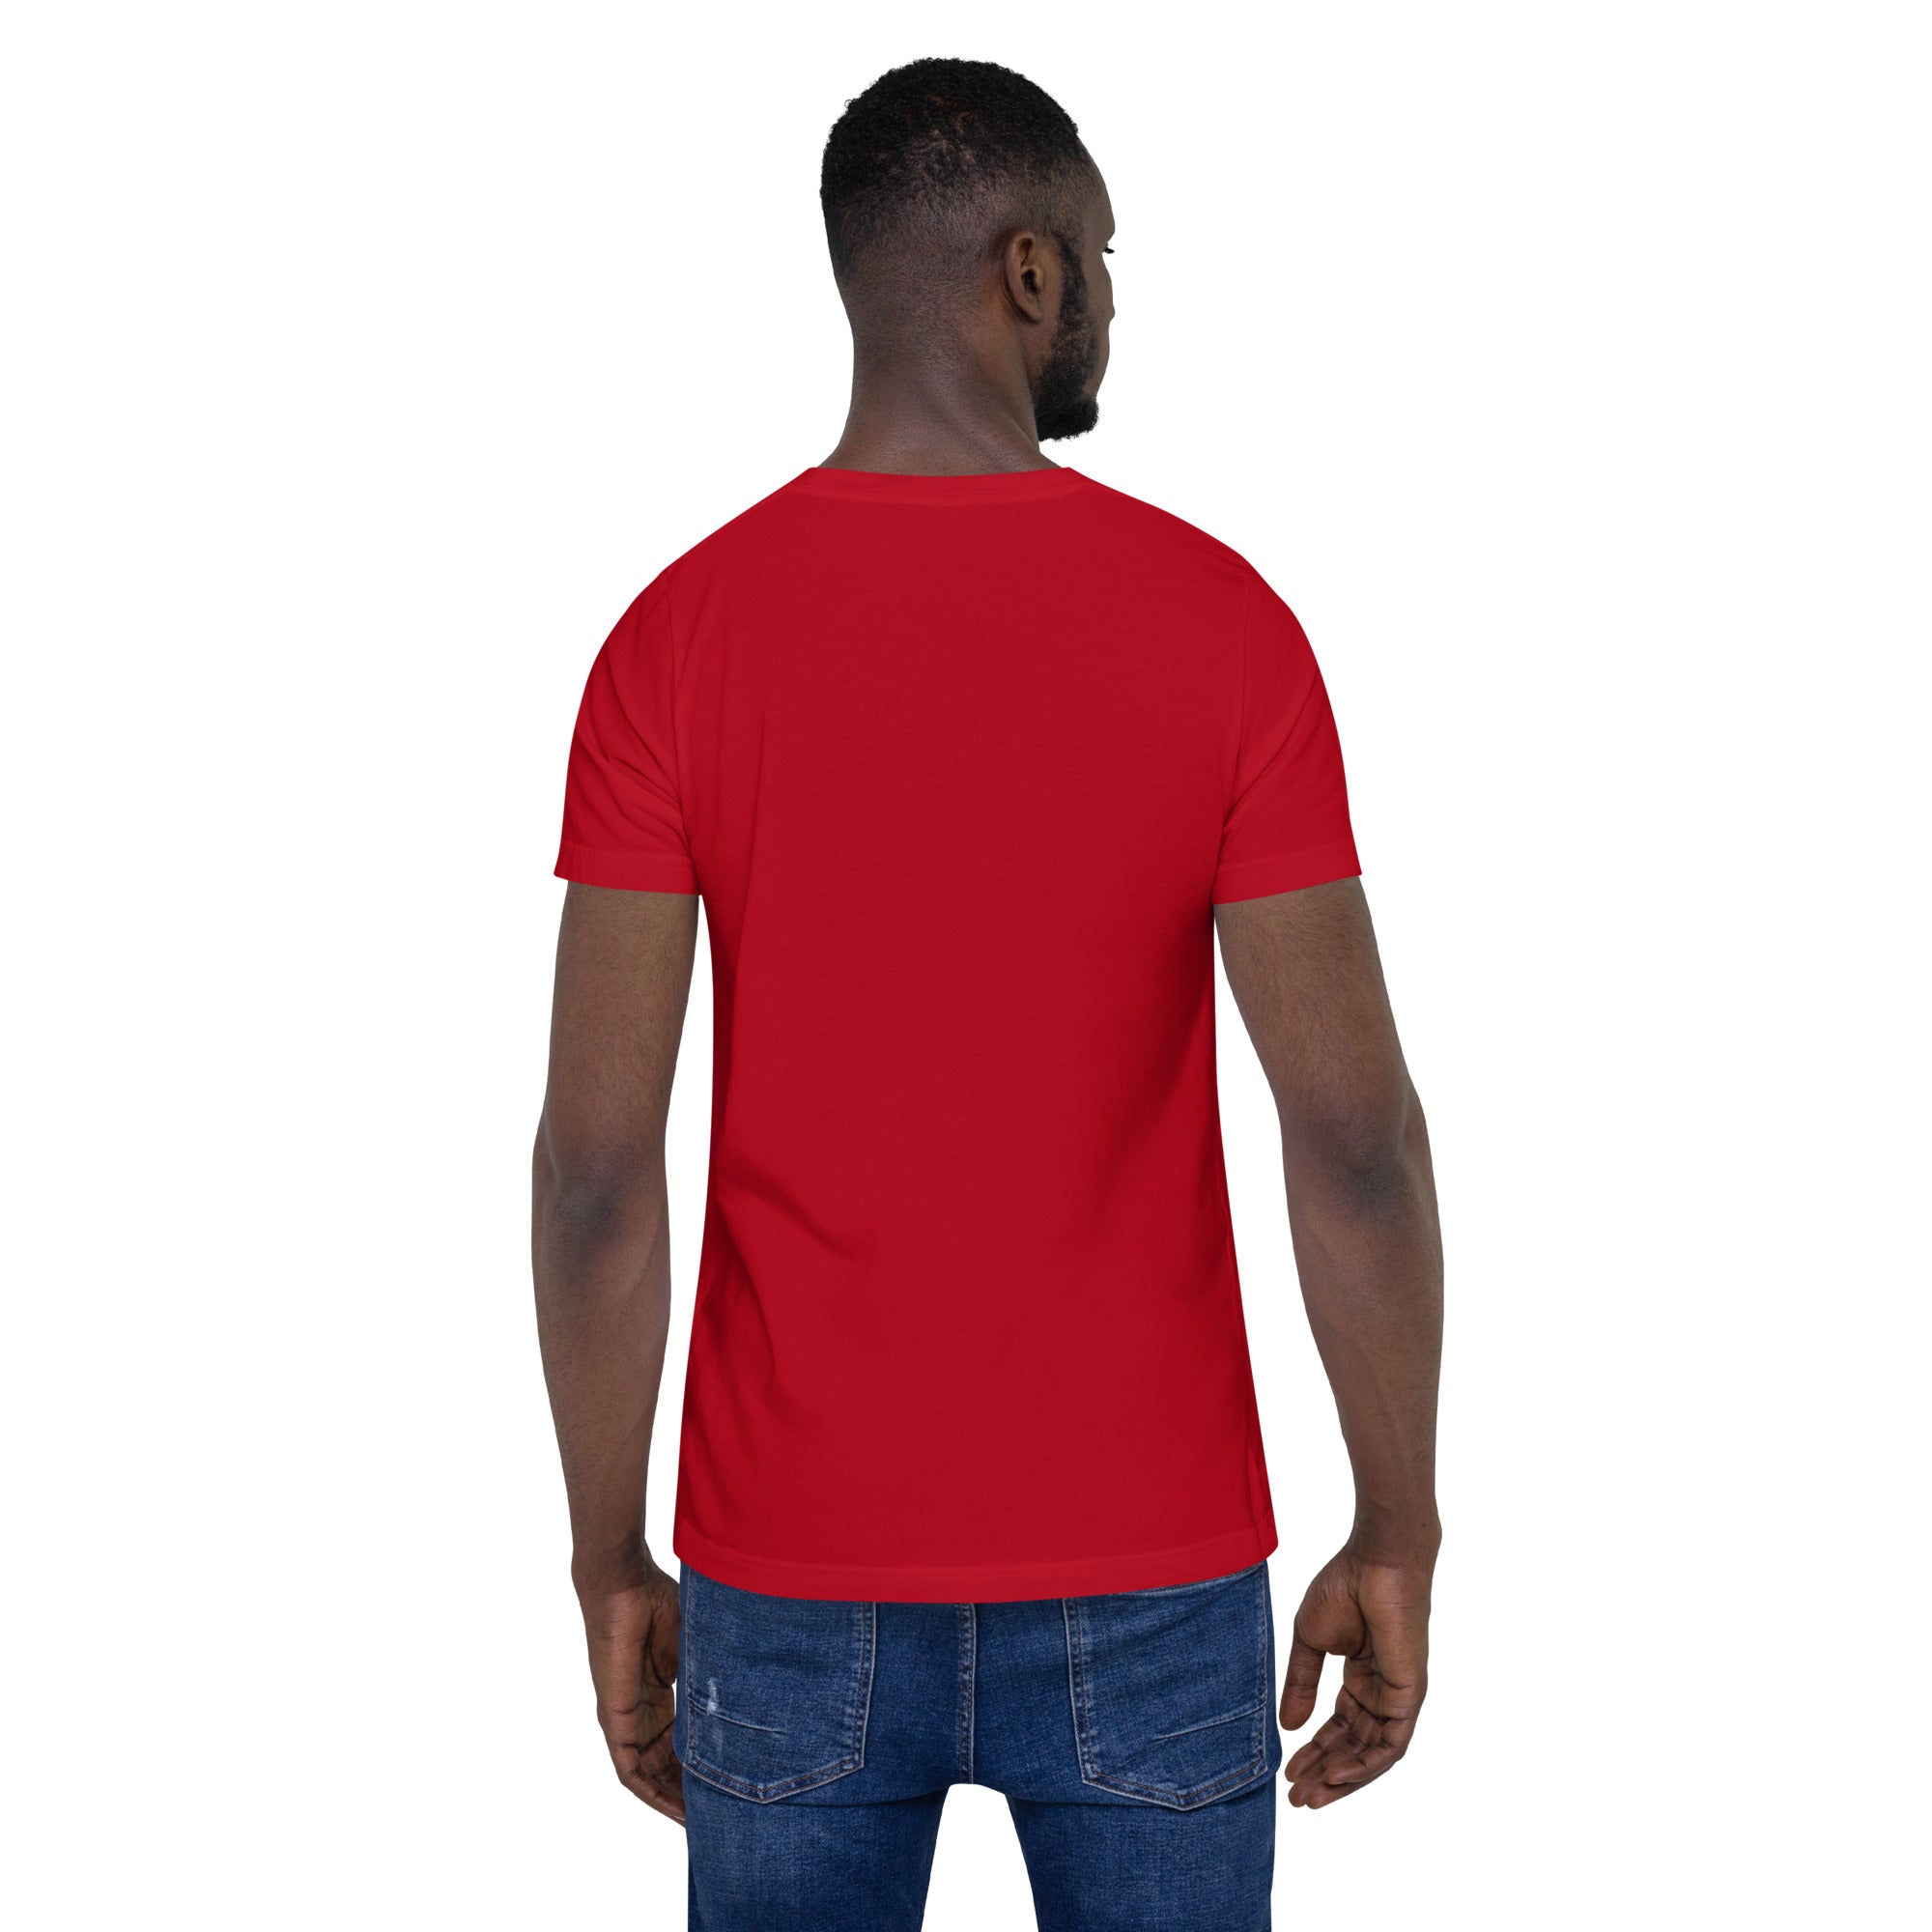 4s Logo White - Red Unisex t-shirt